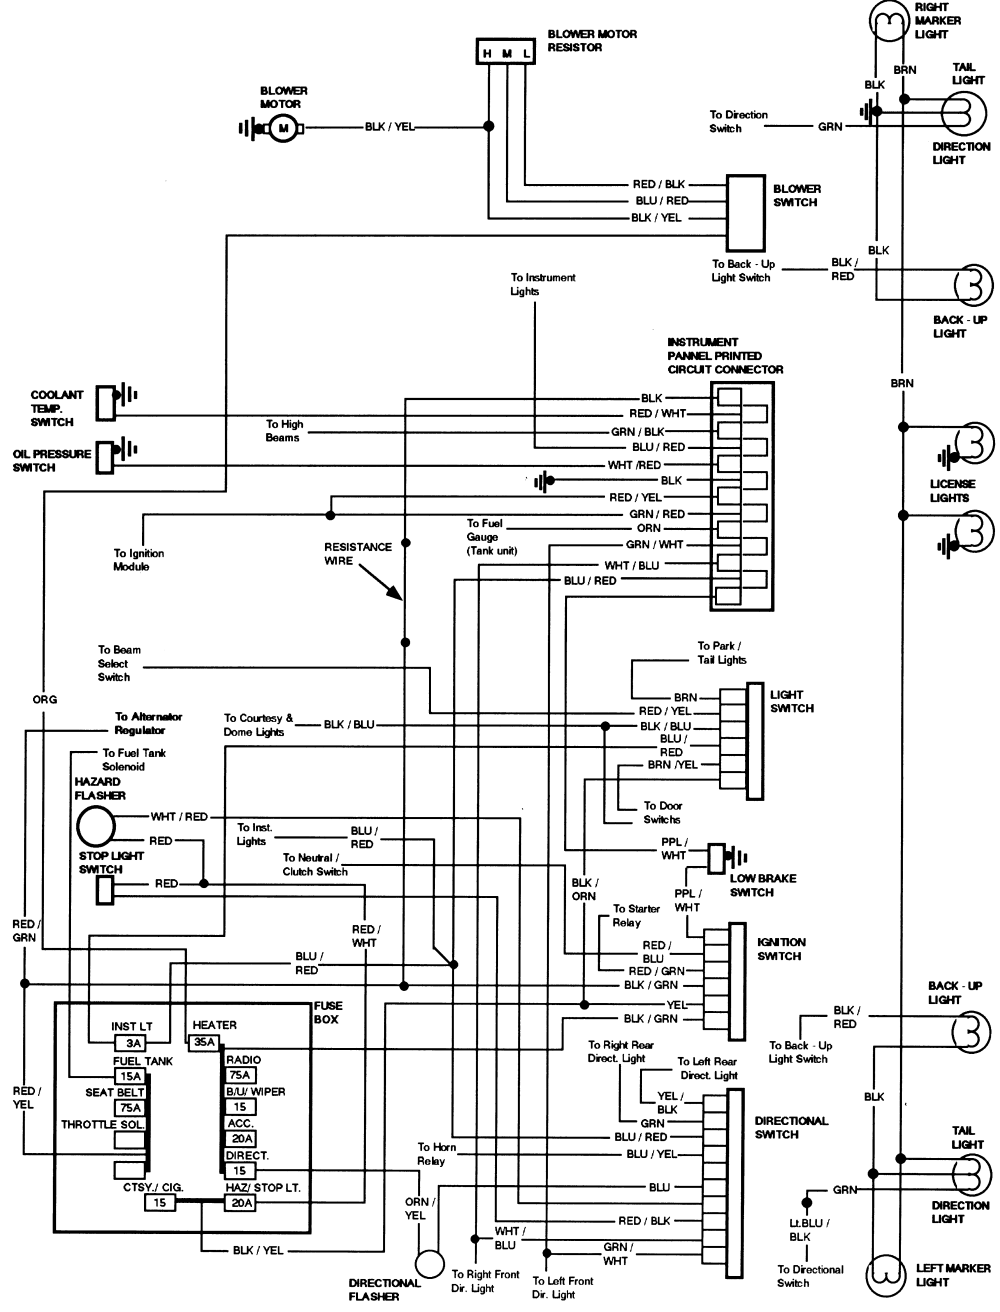 Ford Wiring Diagram from motogurumag.com